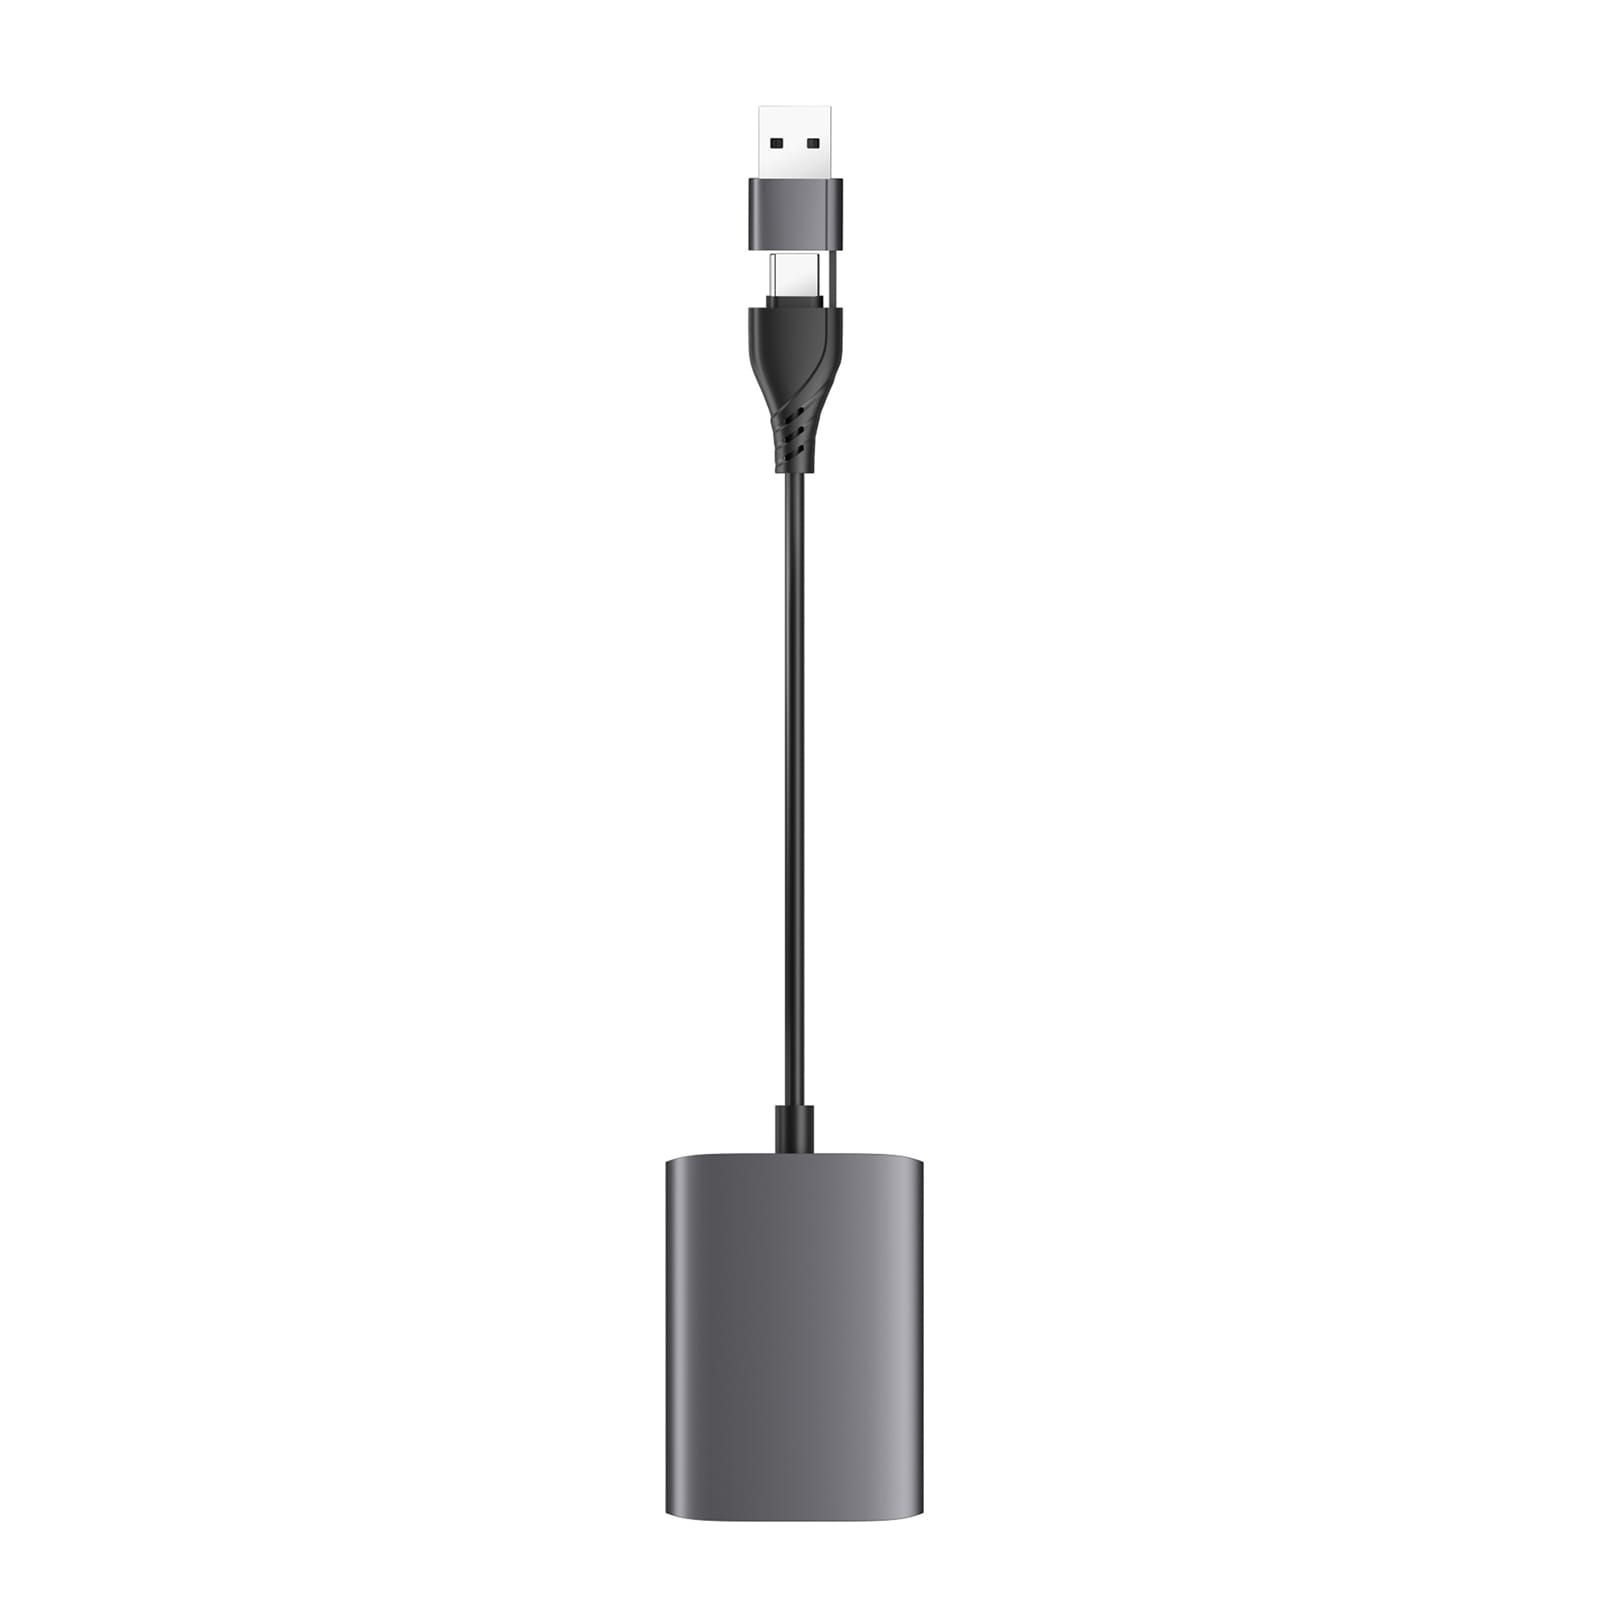 HDMI-telakointiasema 2xHDMI & USB/USB-C